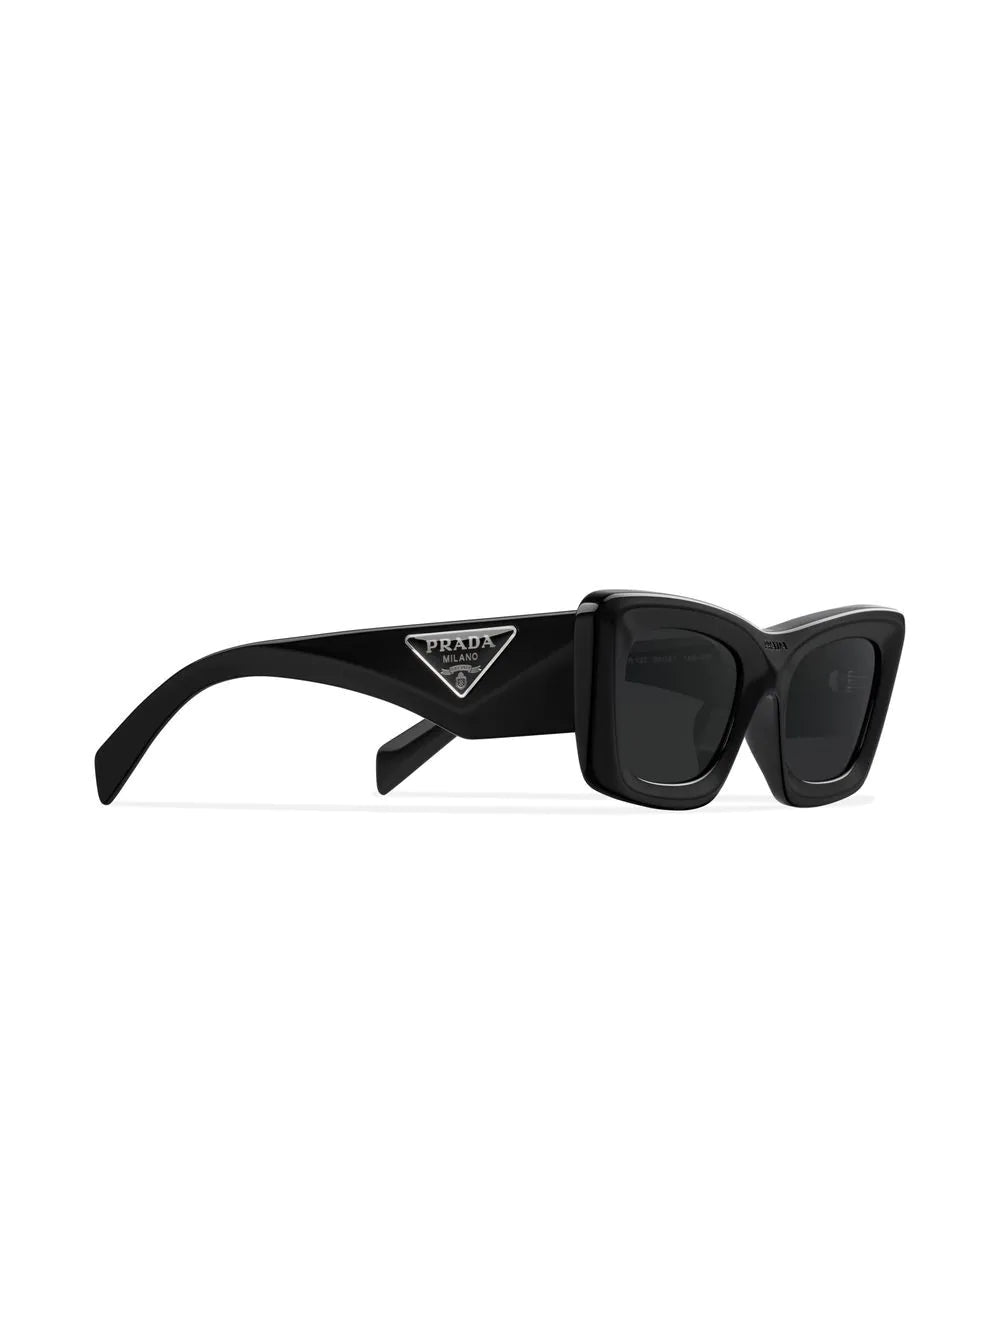 Sunglasses Prada Black in Plastic - 42058731